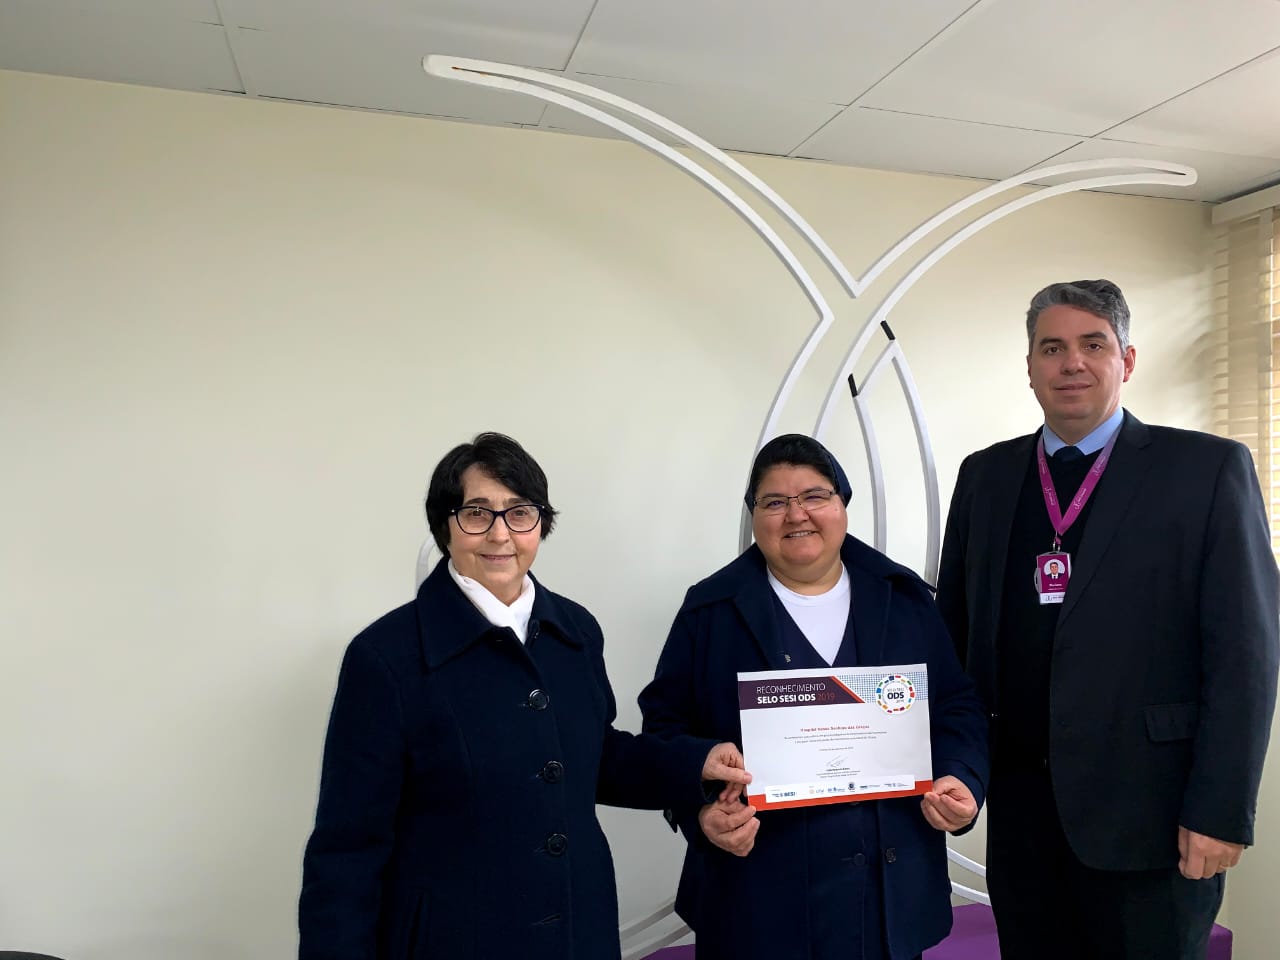 Grupo Nossa Senhora das Graças recebe selo e menção honrosa no prêmio SESI ODS 2019 - Hospital Nossa Senhora da Graça